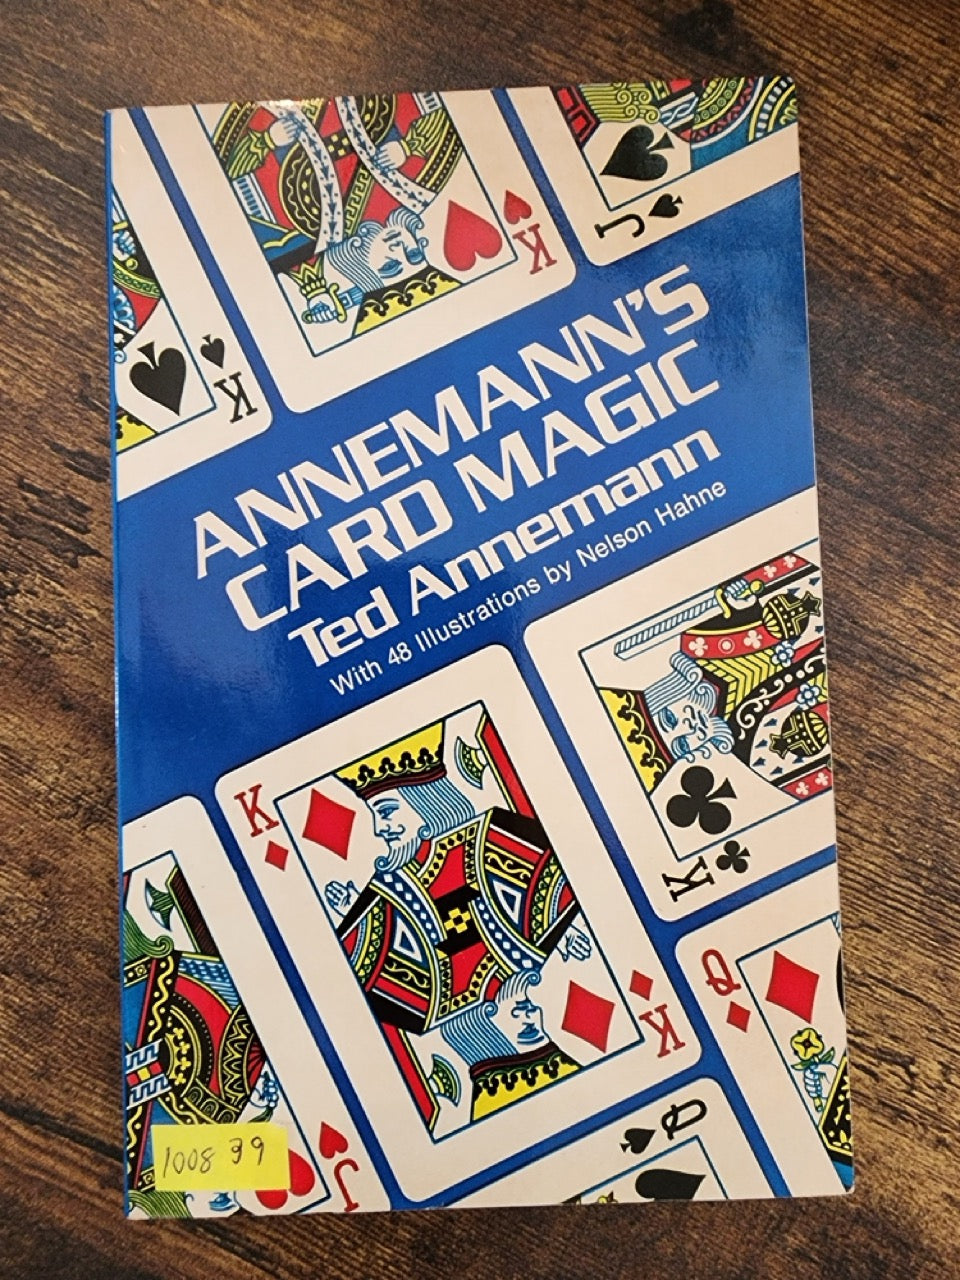 Annemann's Card magic - Ted Annemann